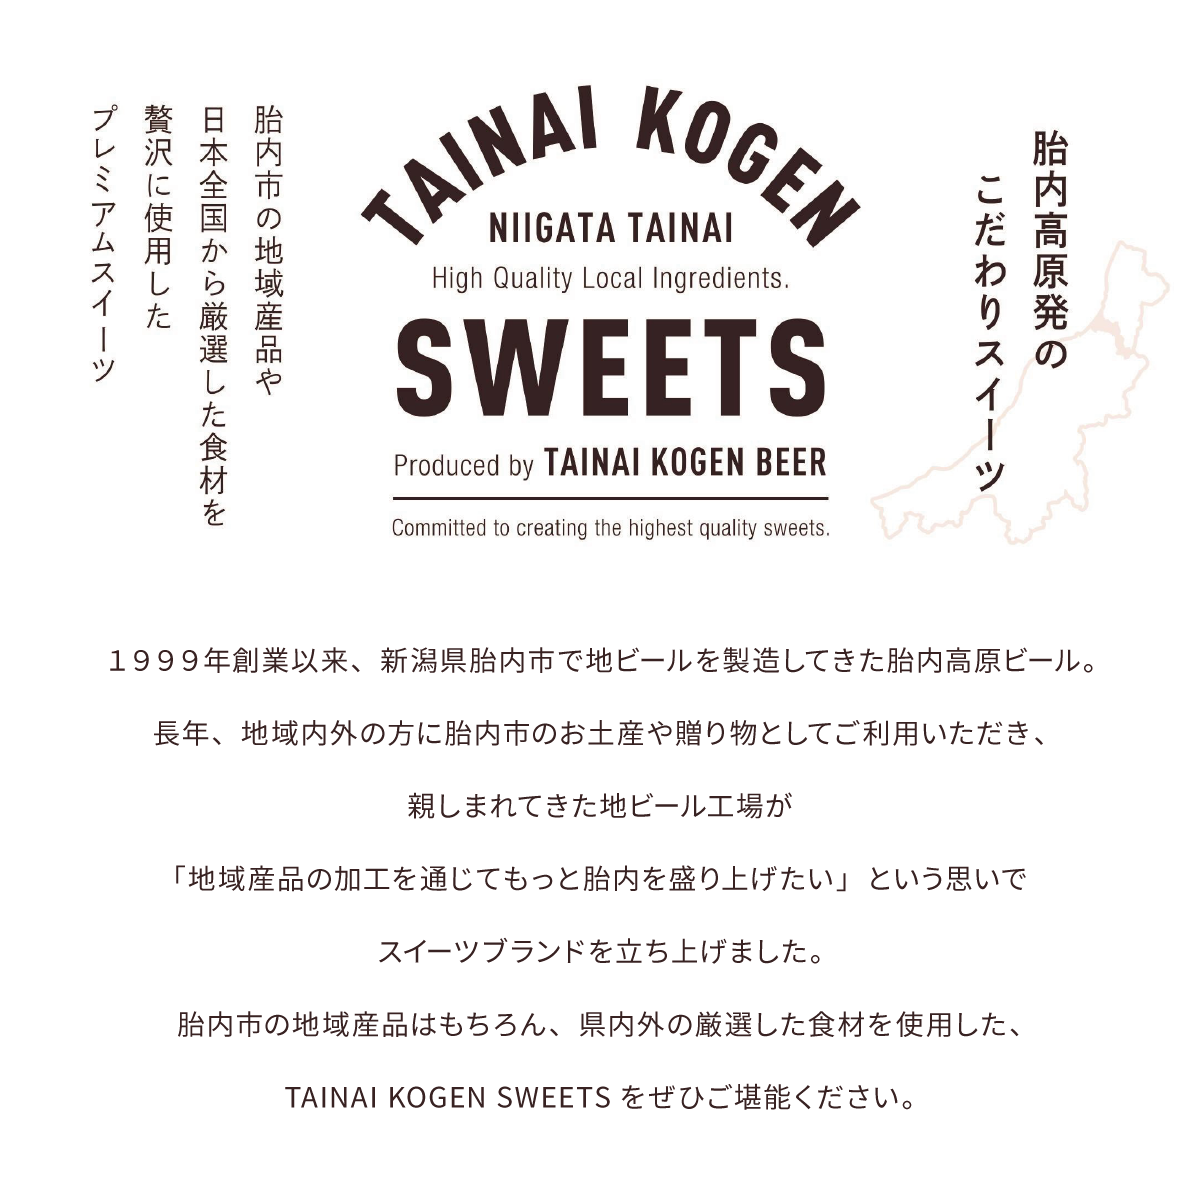 「TAINAI KOGEN SWEETS」胎内市の地域産品や日本全国から厳選した食材を贅沢に使用したプレミアムスイーツ